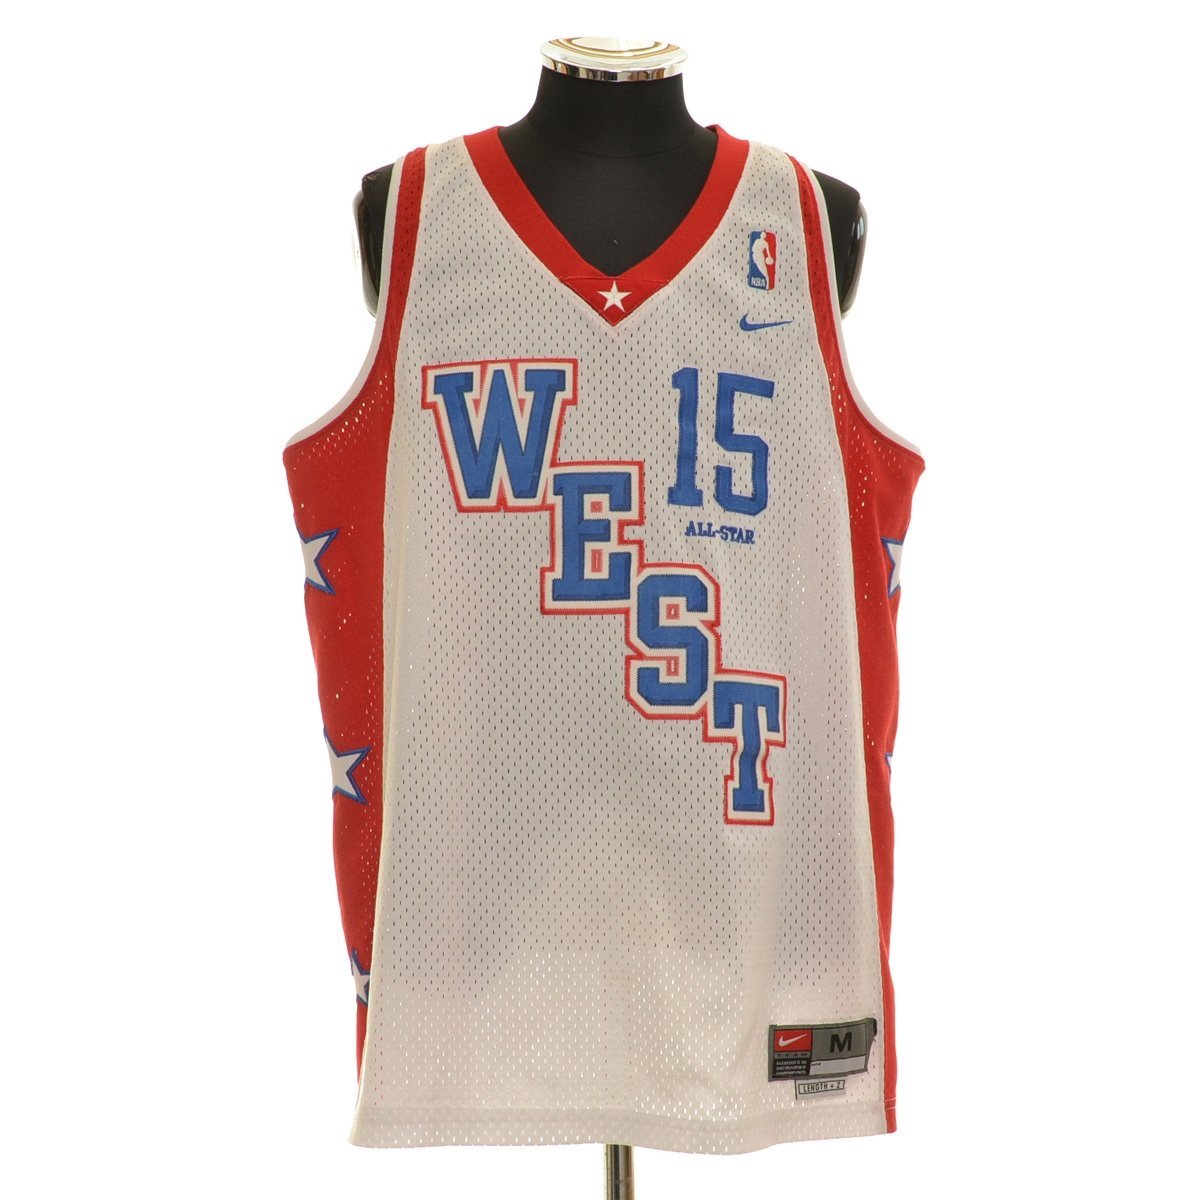 格安販売中 #15 WEST STAR ALL NBA 2004 ゲームシャツ ナイキ NIKE ◆439239 ANTHONY ホワイト×レッド メンズ サイズM アンソニー カーメロ 記念ユニフォーム